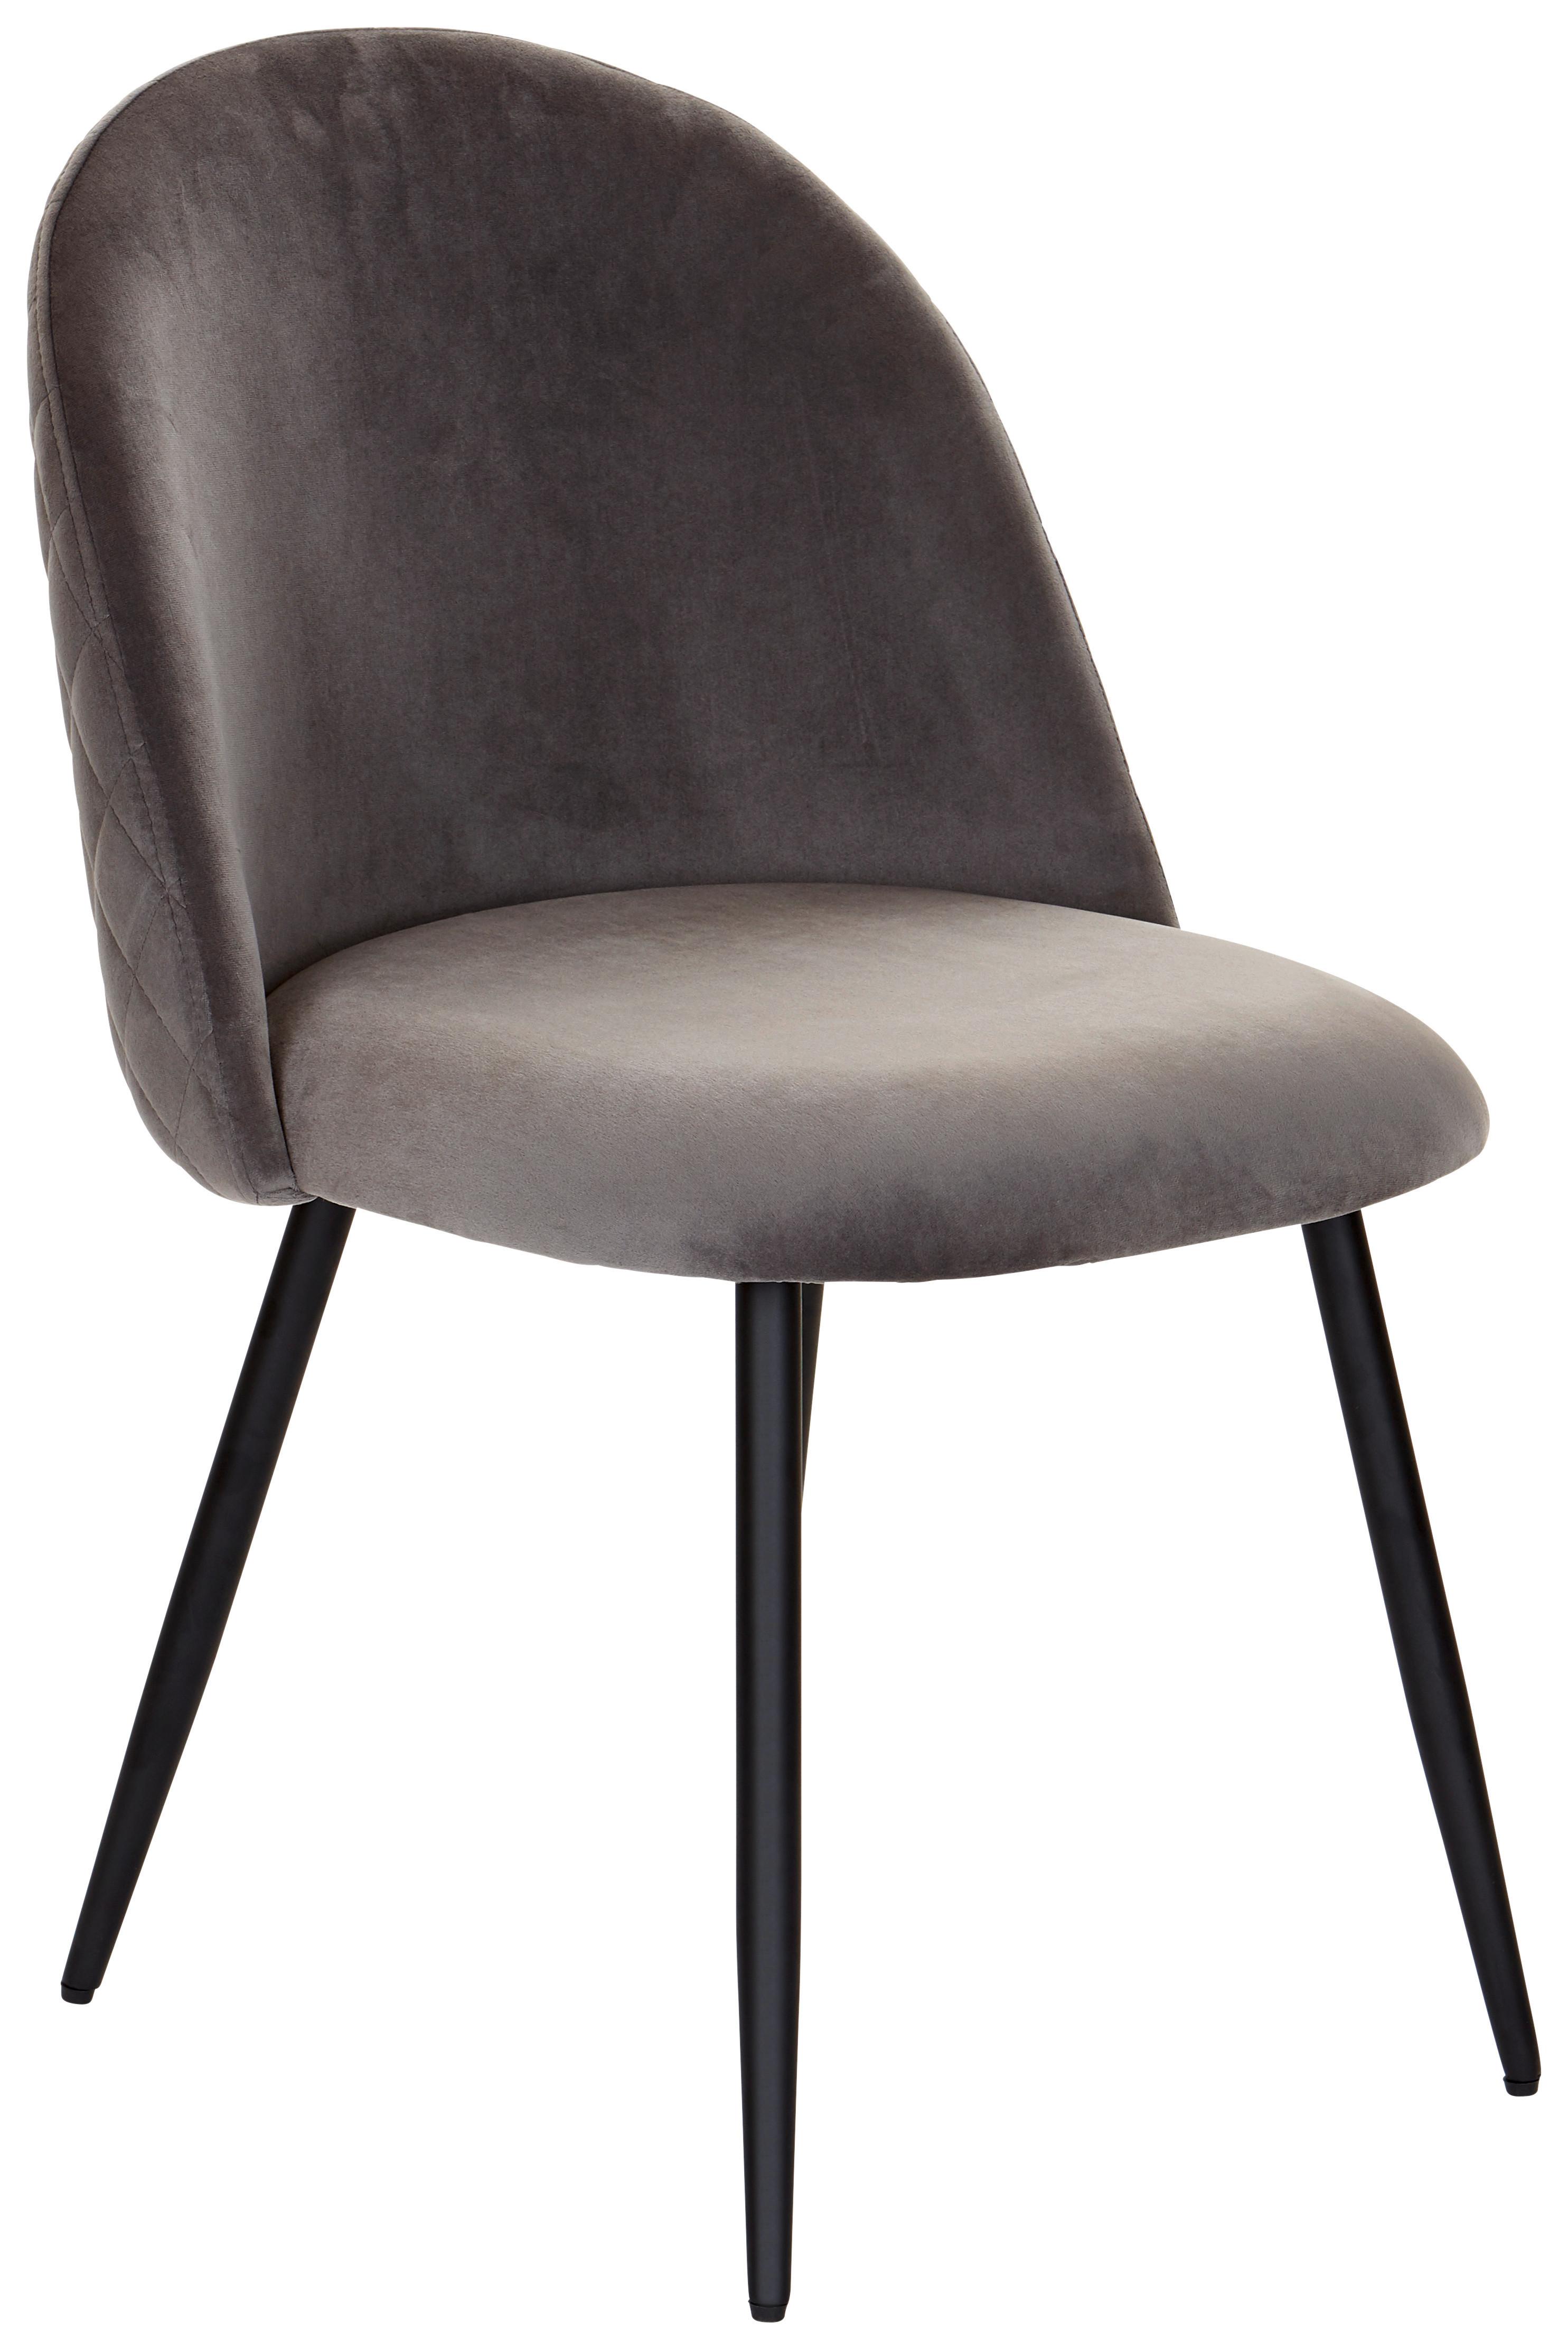 Jídelní Židle Torres Tmavě Šedá - černá/tmavě šedá, Moderní, kov/dřevo (51/79/58cm) - MID.YOU